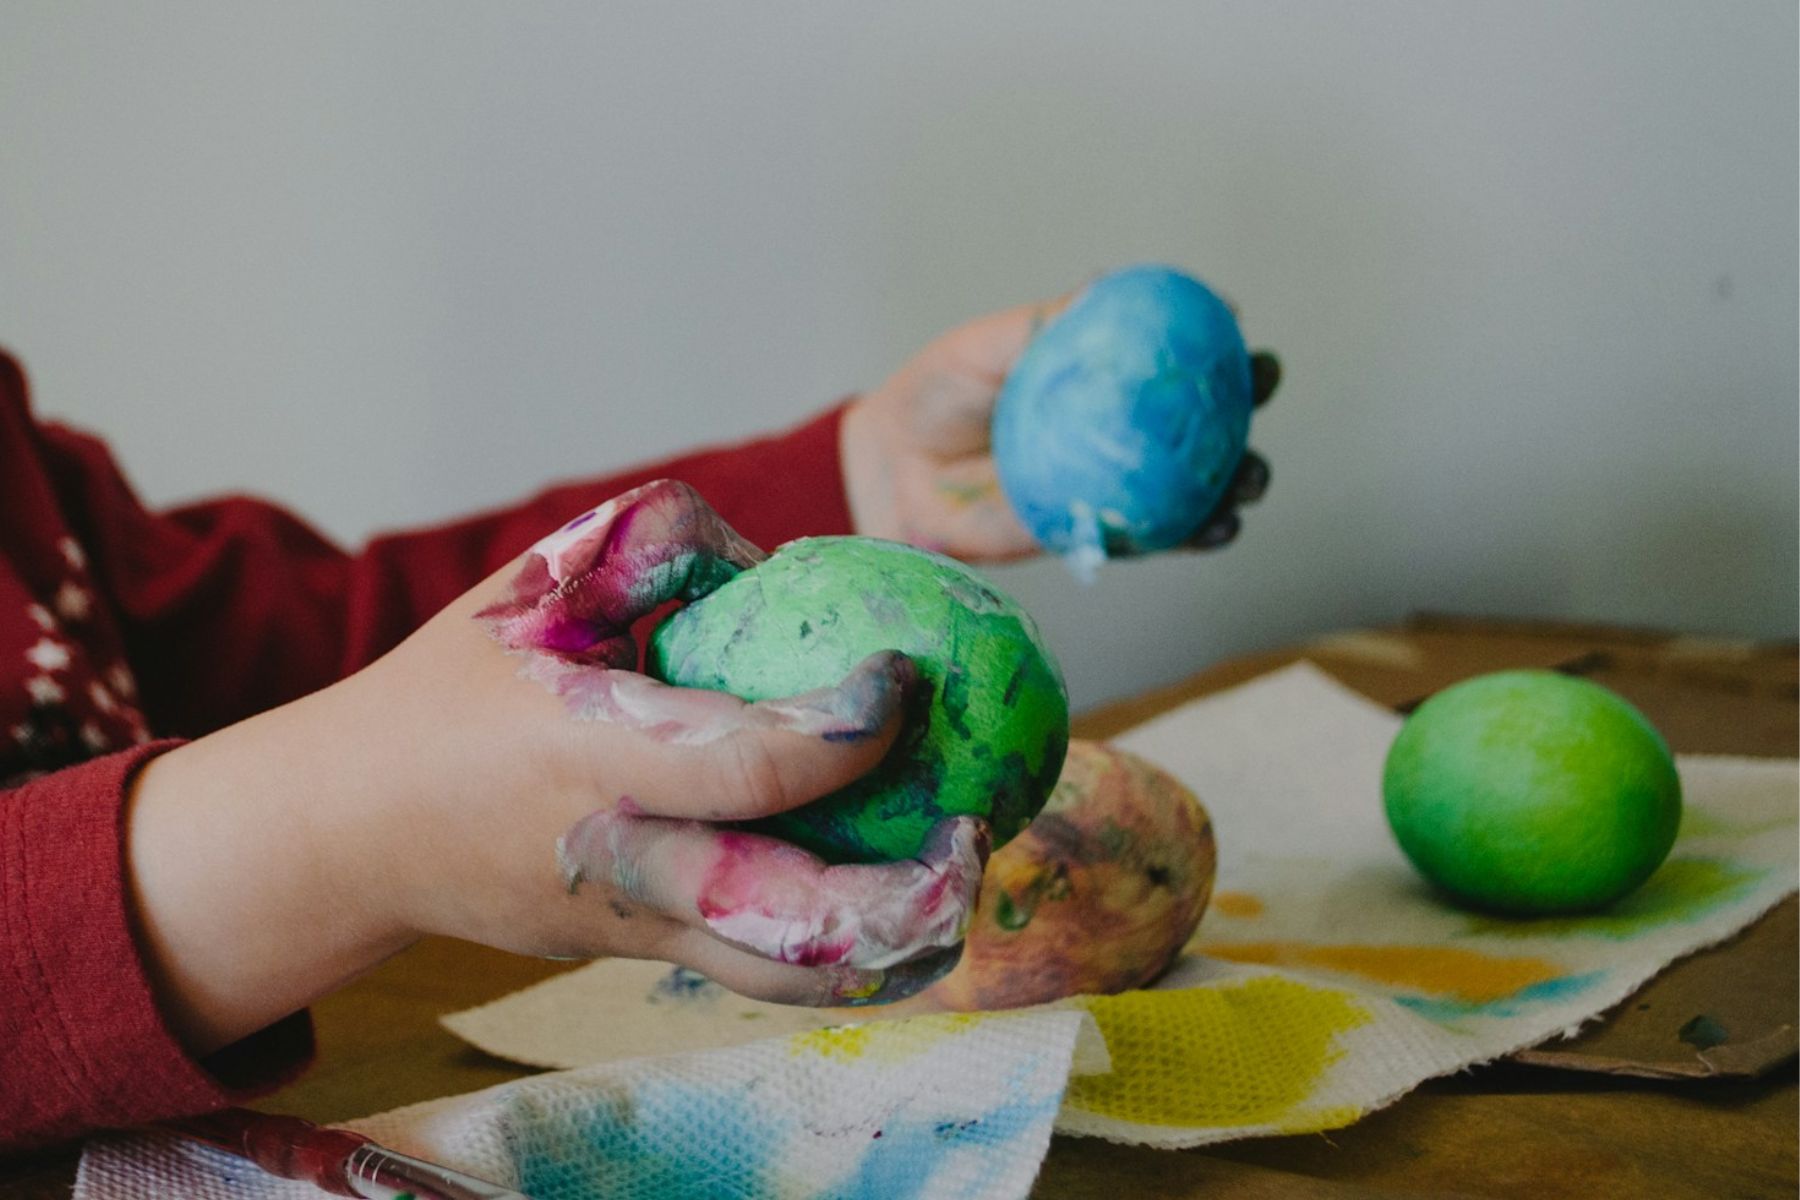 Farbige Kinderhände halten gefärbte Ostereier. - Basteln für Ostern mit kleinen Kindern? Wir haben einfache Ideen, die garantiert gelingen.